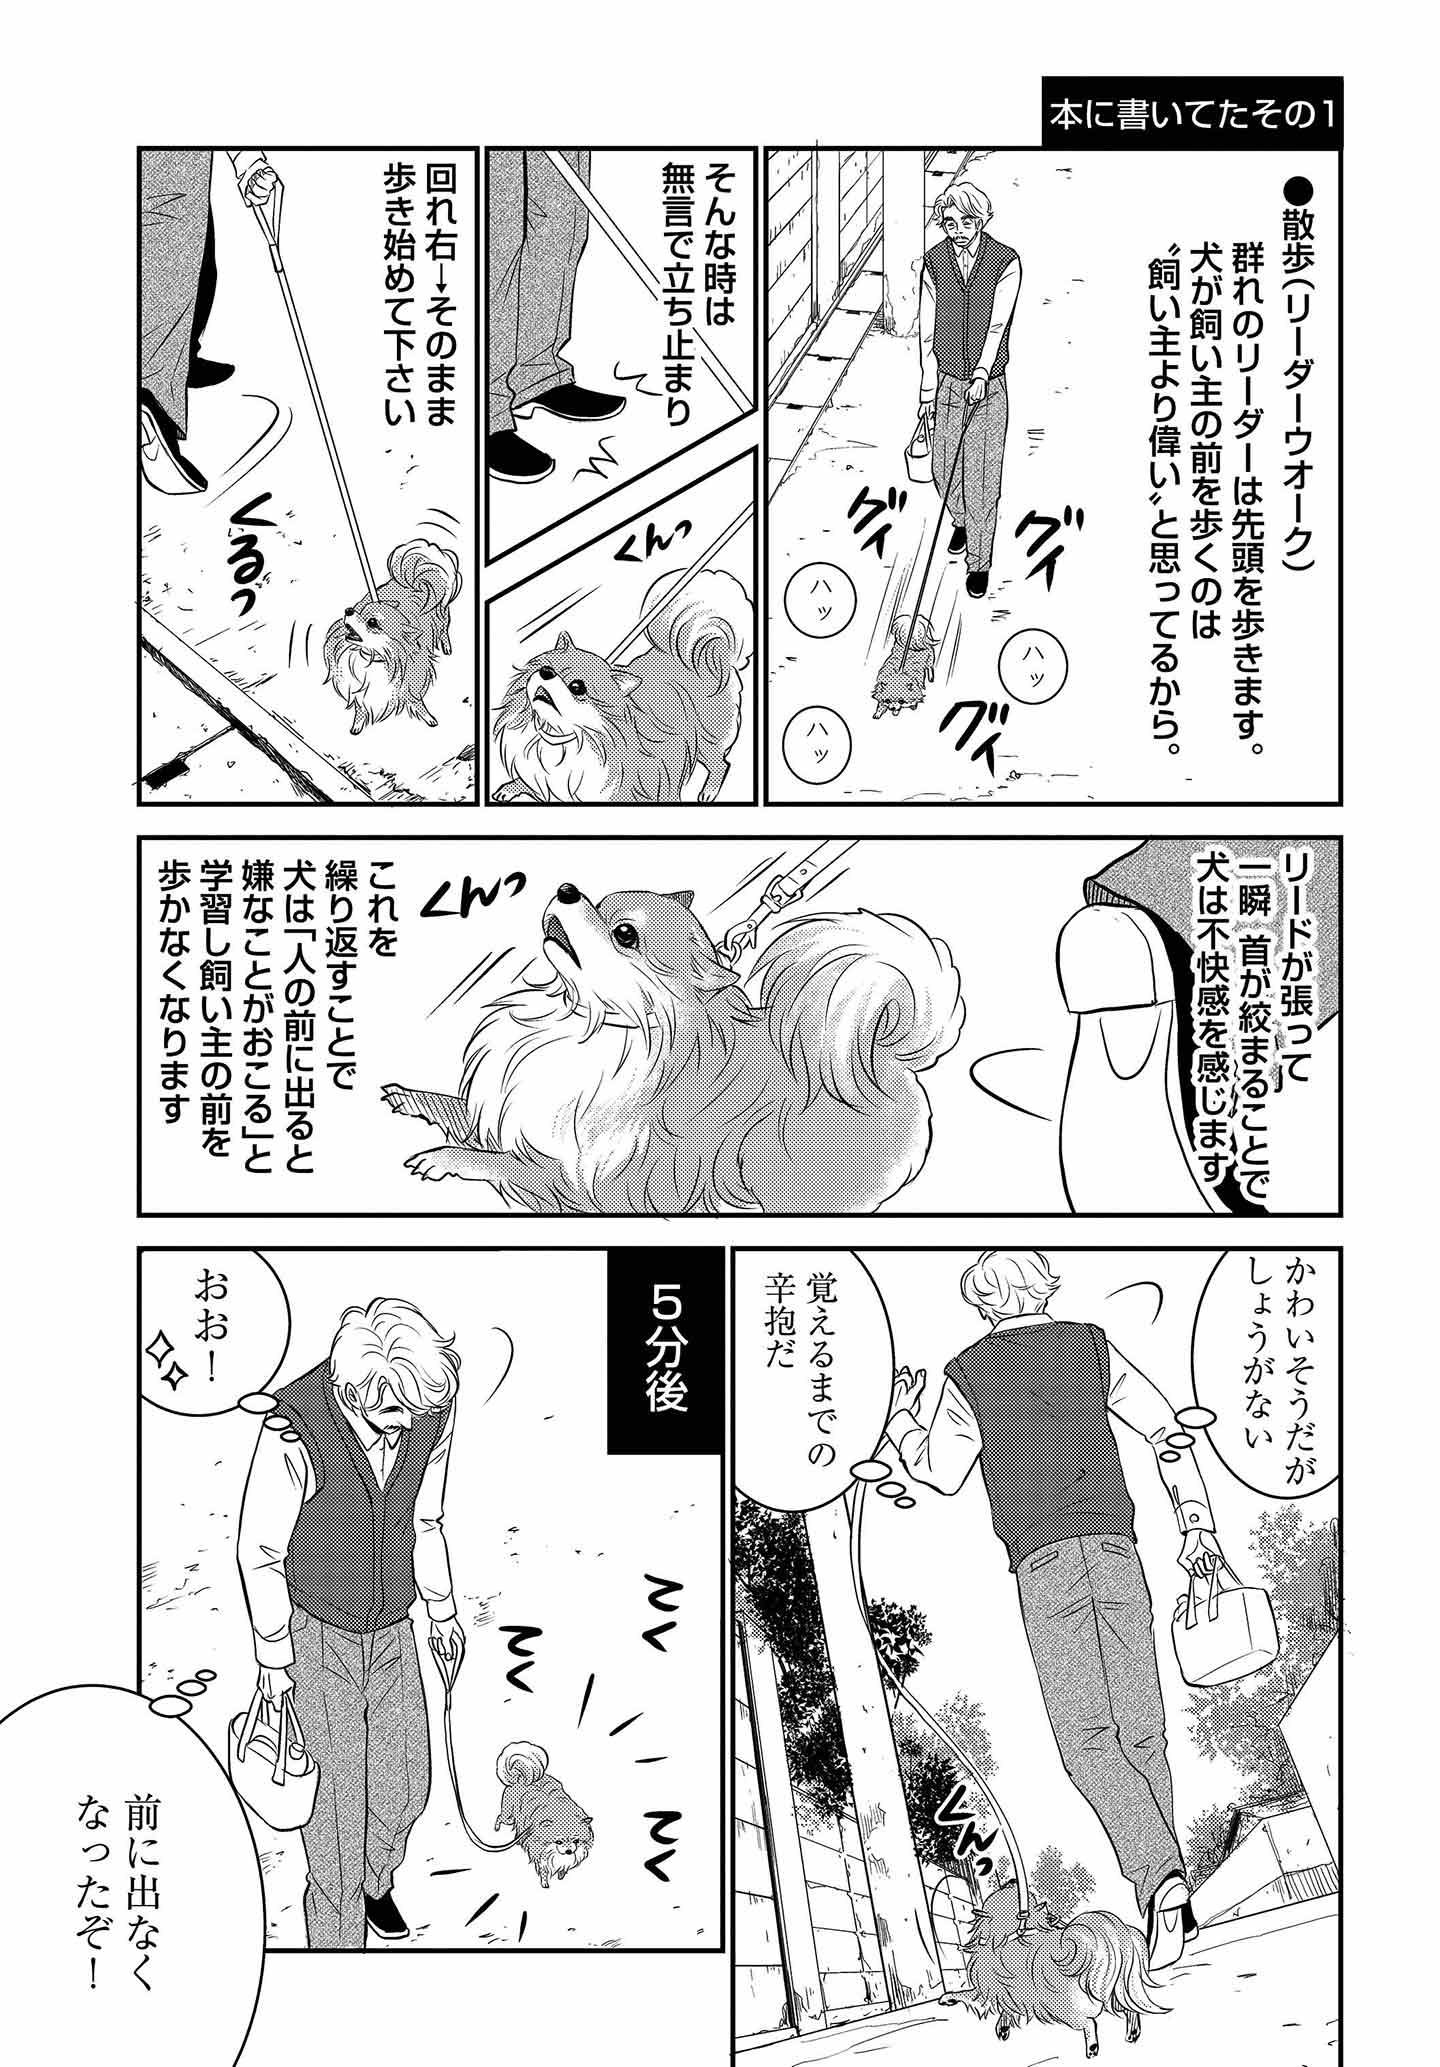 ドッグトレーニング漫画『DOG SIGNAL』32話目　3/4